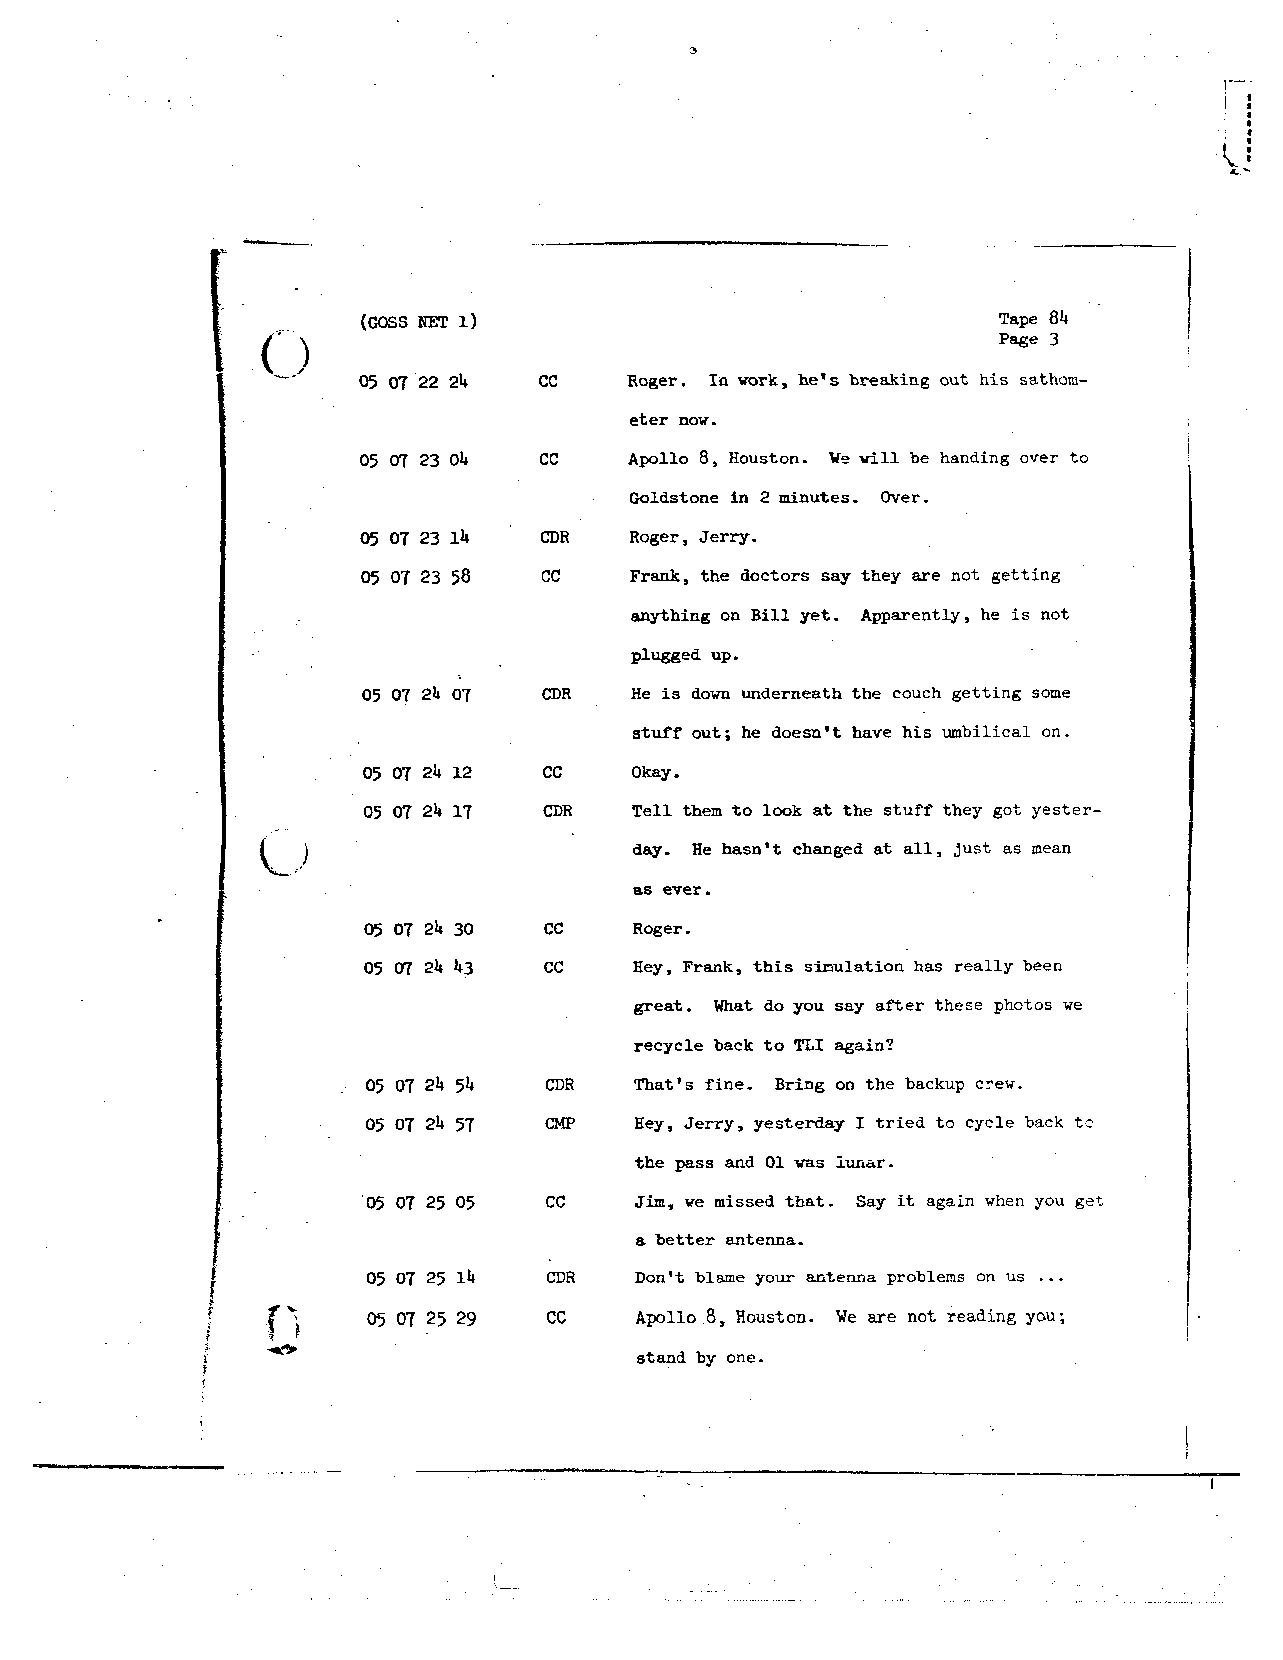 Page 689 of Apollo 8’s original transcript